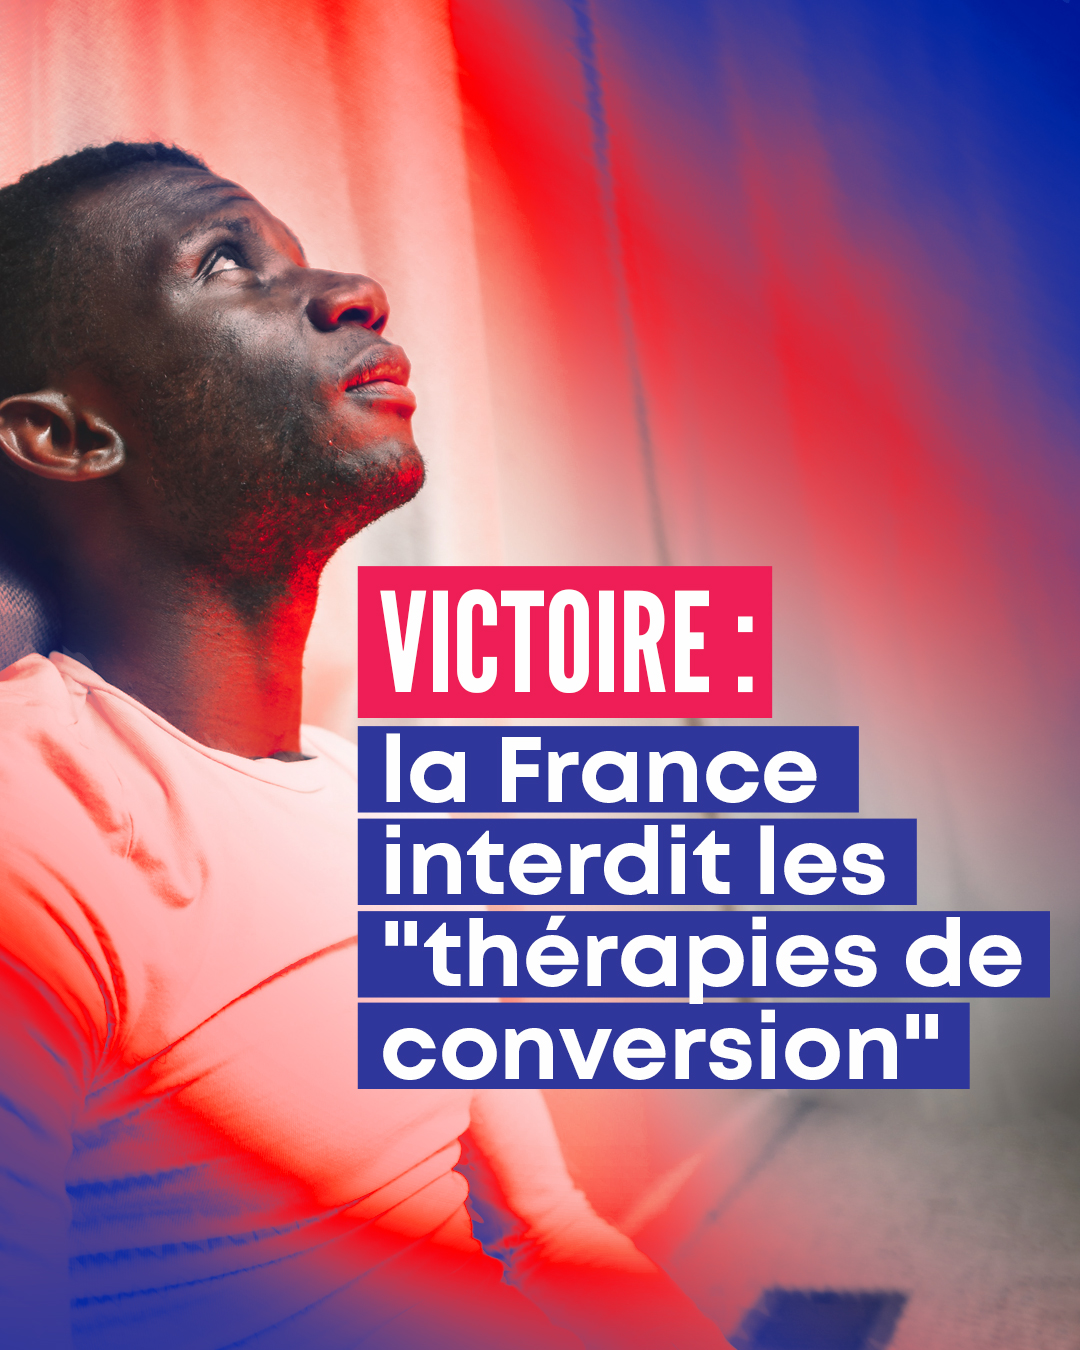 Victorie : la France a interdit les "thérapies de conversion" !